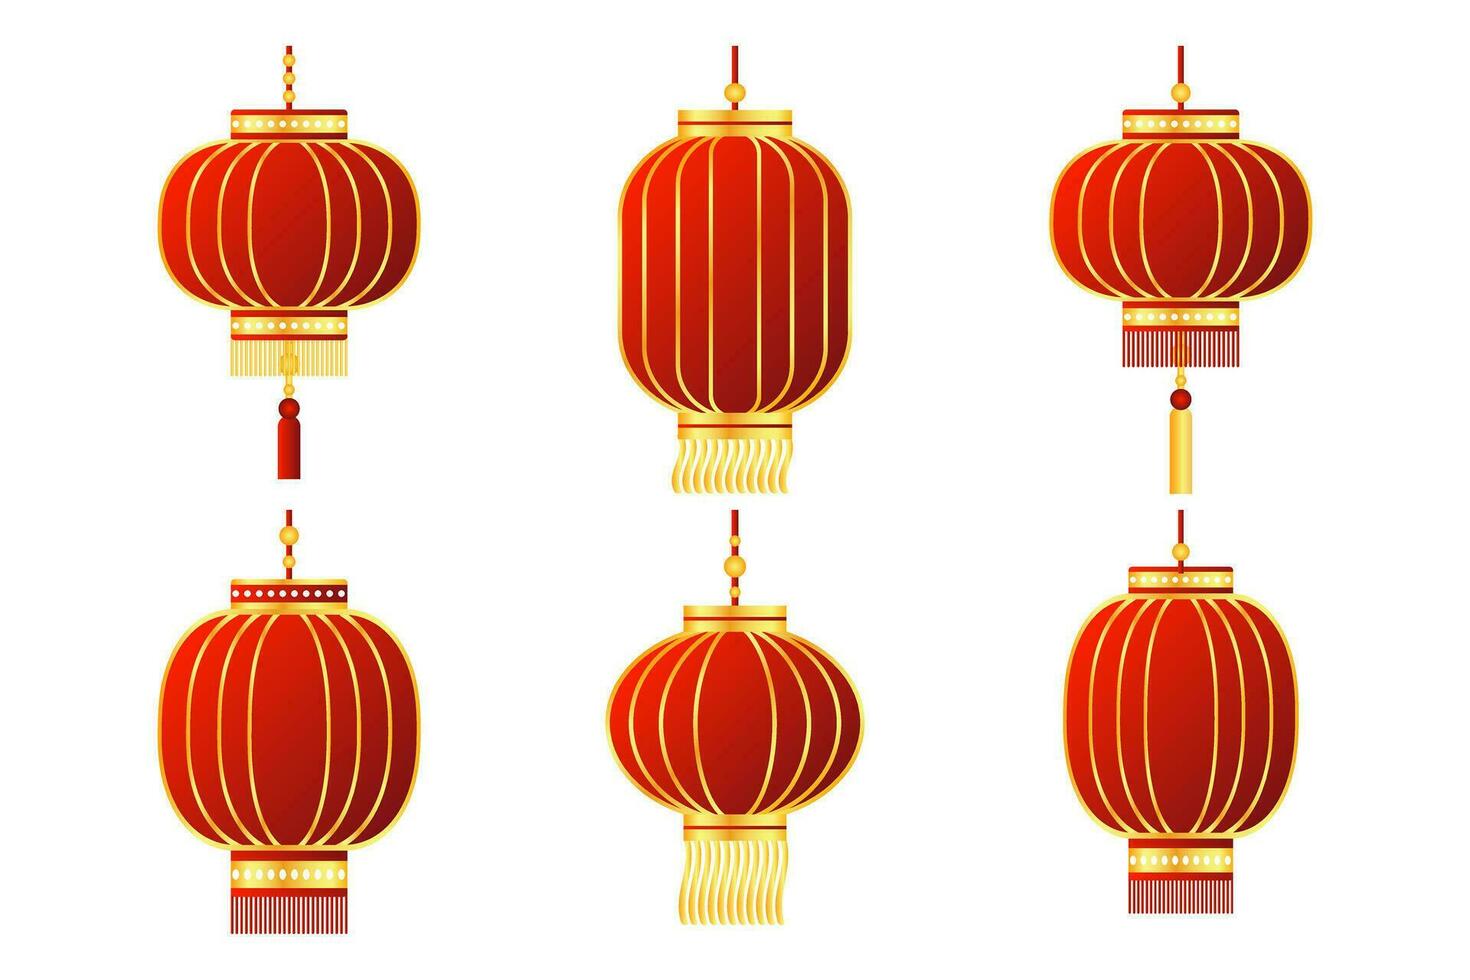 ensemble de lanternes chinoises rouges colorées avec des dragons dorés et des ornements. éléments de décor, vecteur